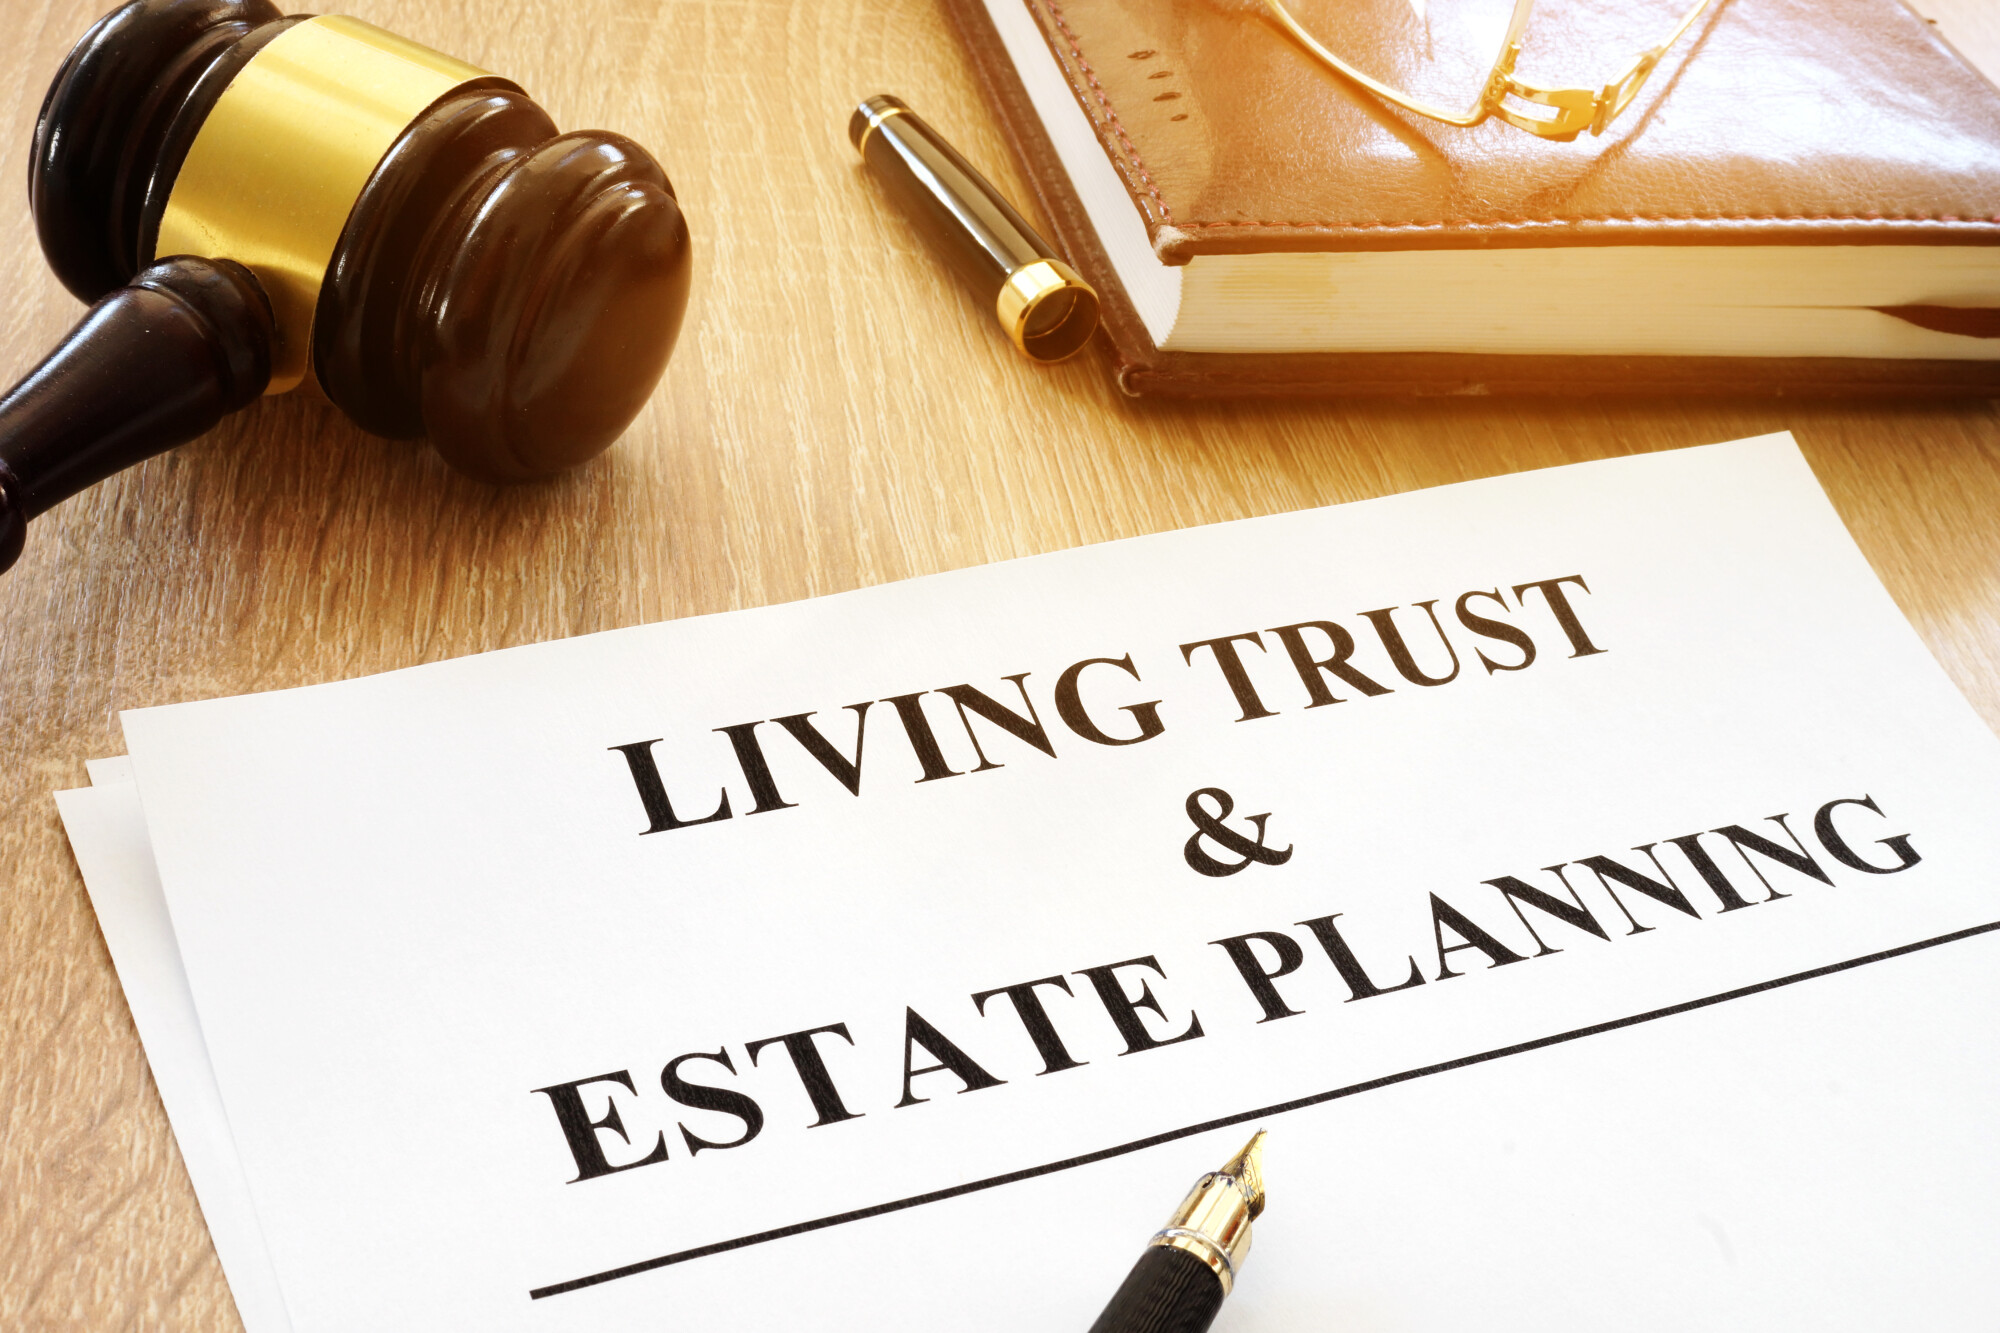 Living Trust & Estate Planning” form on a desk.